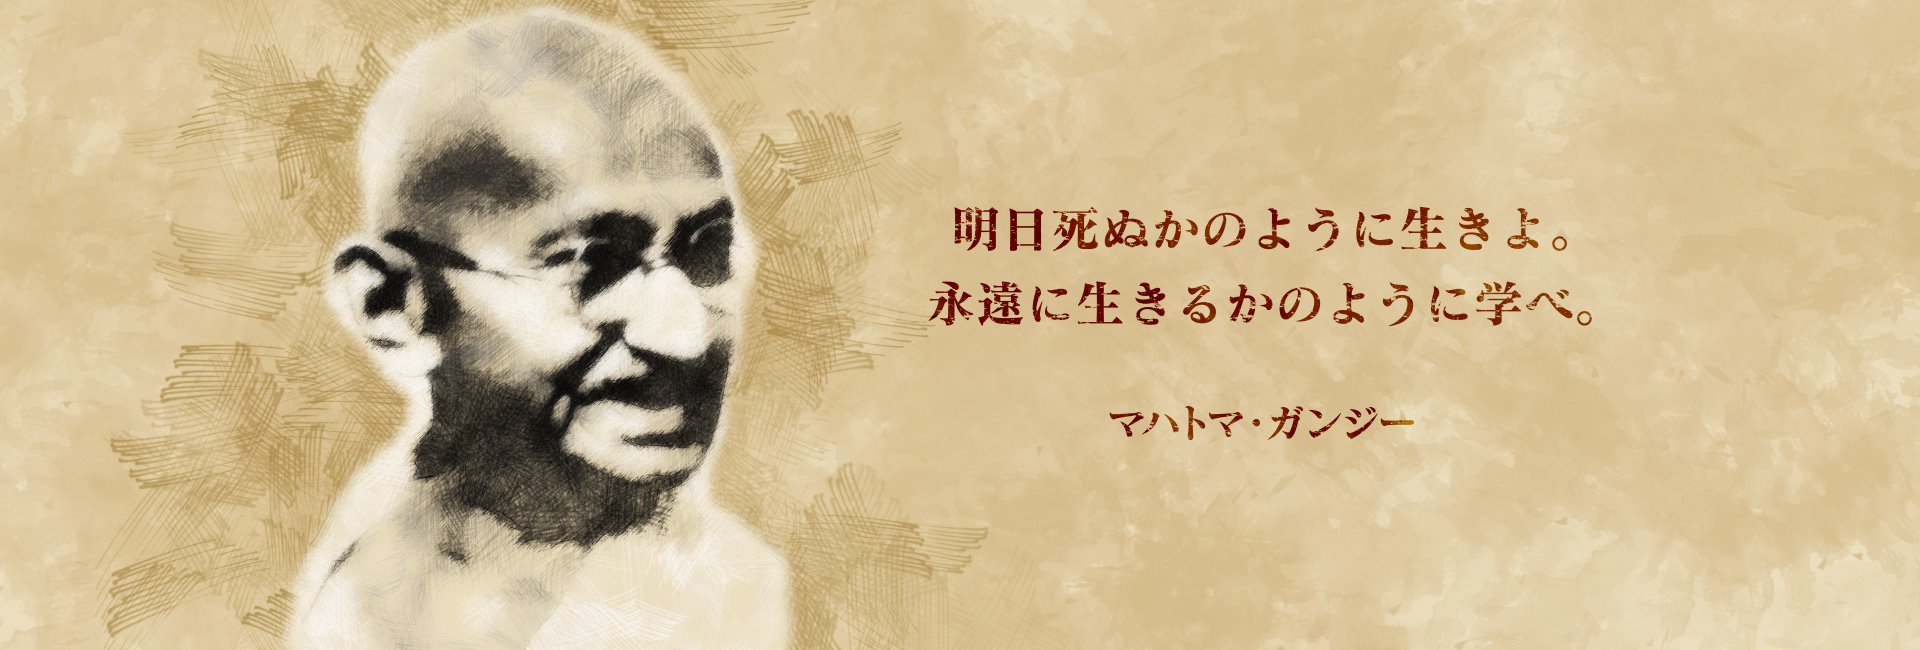 明日死ぬかのように生きよ。永遠に生きるかのように学べ。マハトマ・ガンジー